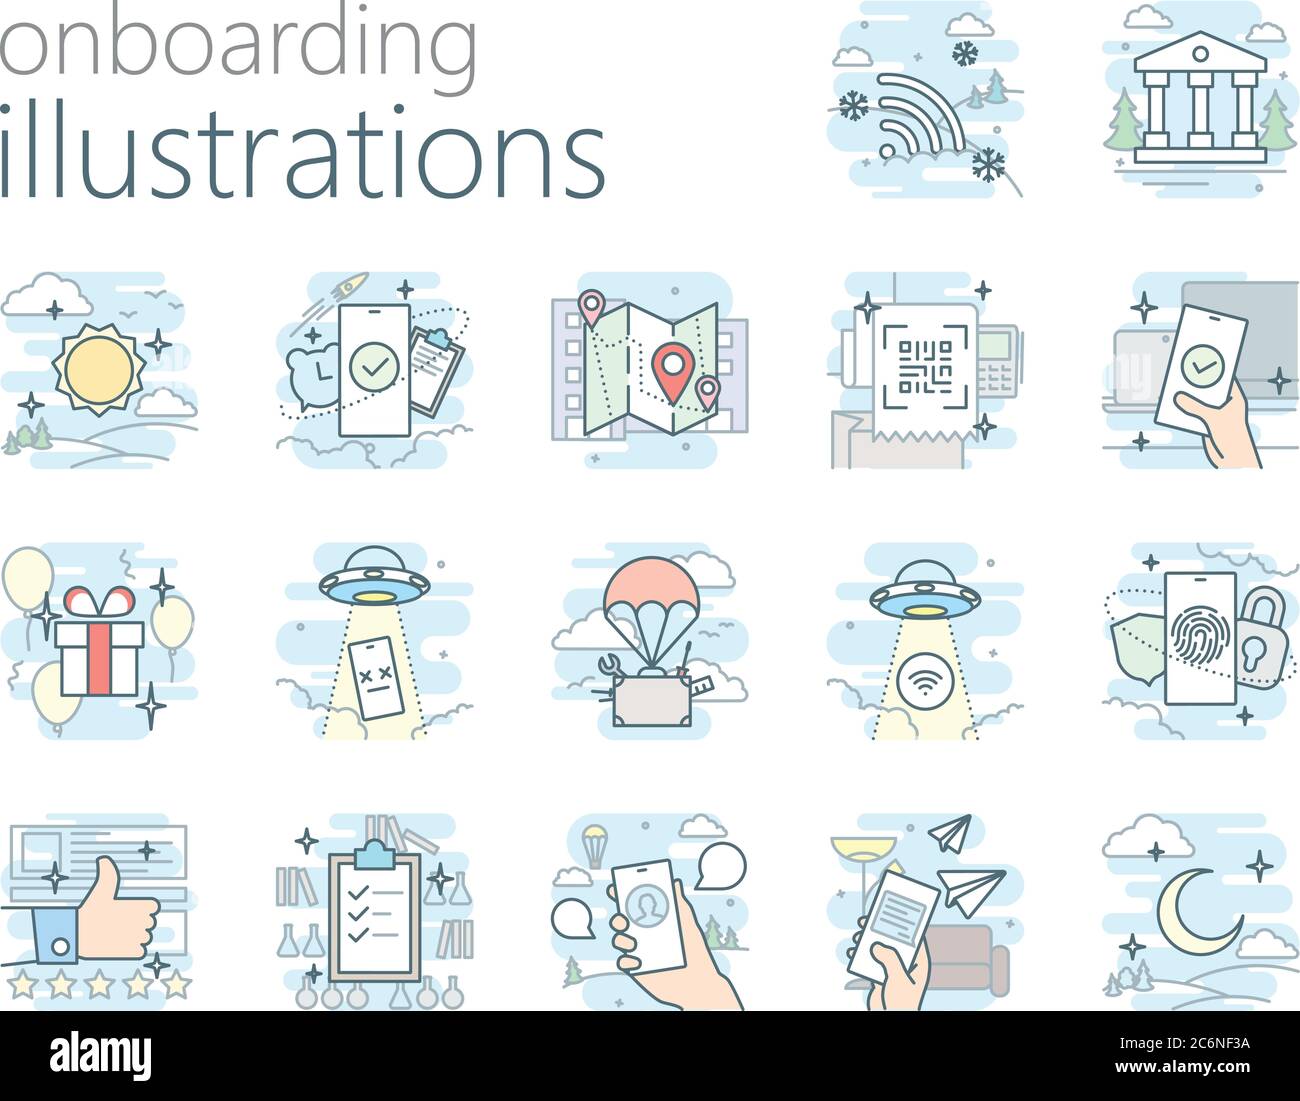 17 Onboarding-Illustrationen für mobile und Web-App und andere Stock Vektor